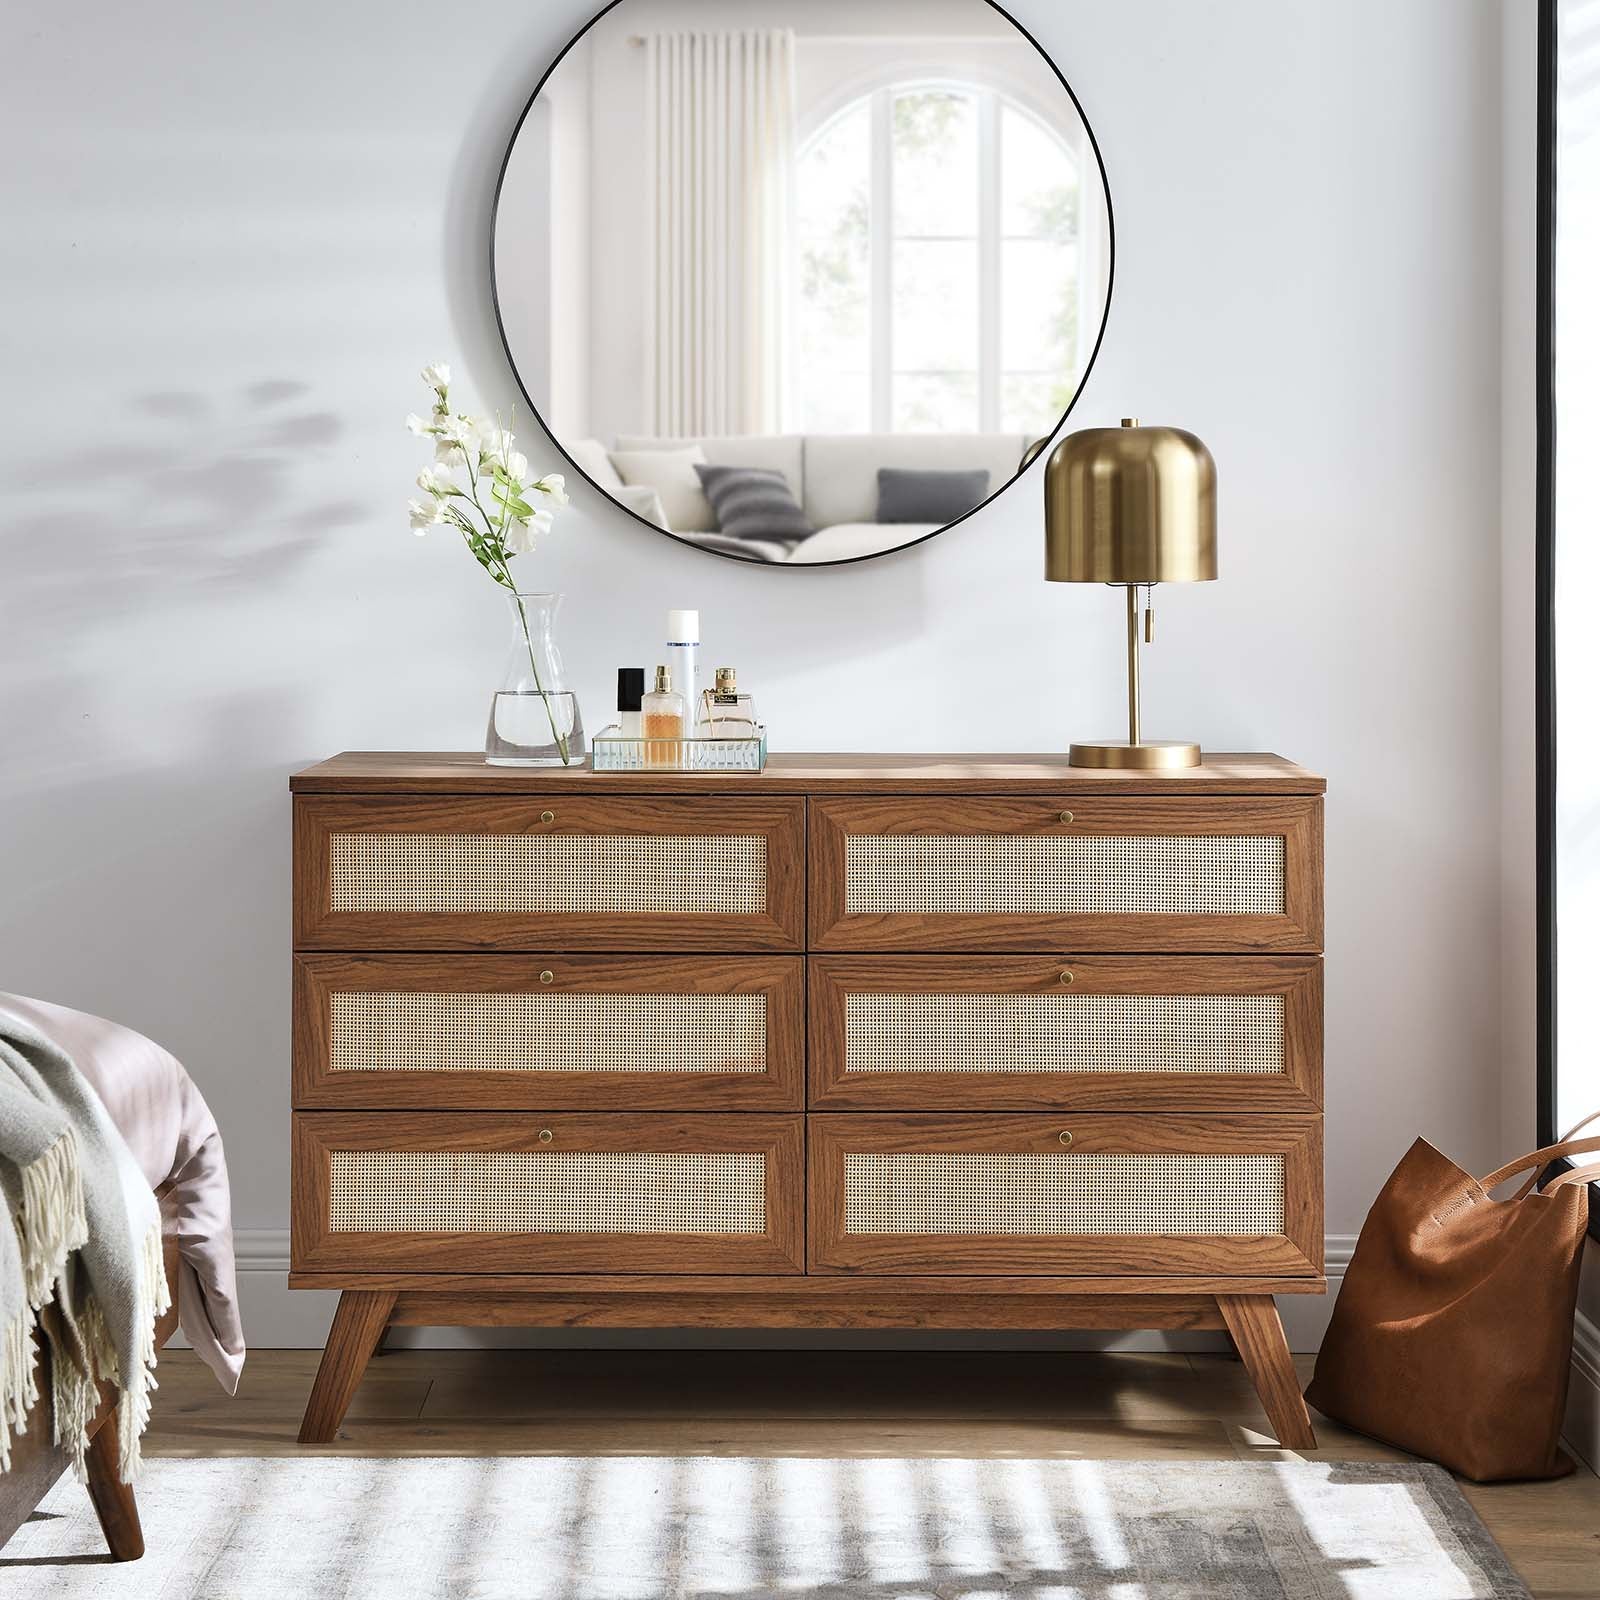 Soma 6-Drawer Dresser - East Shore Modern Home Furnishings